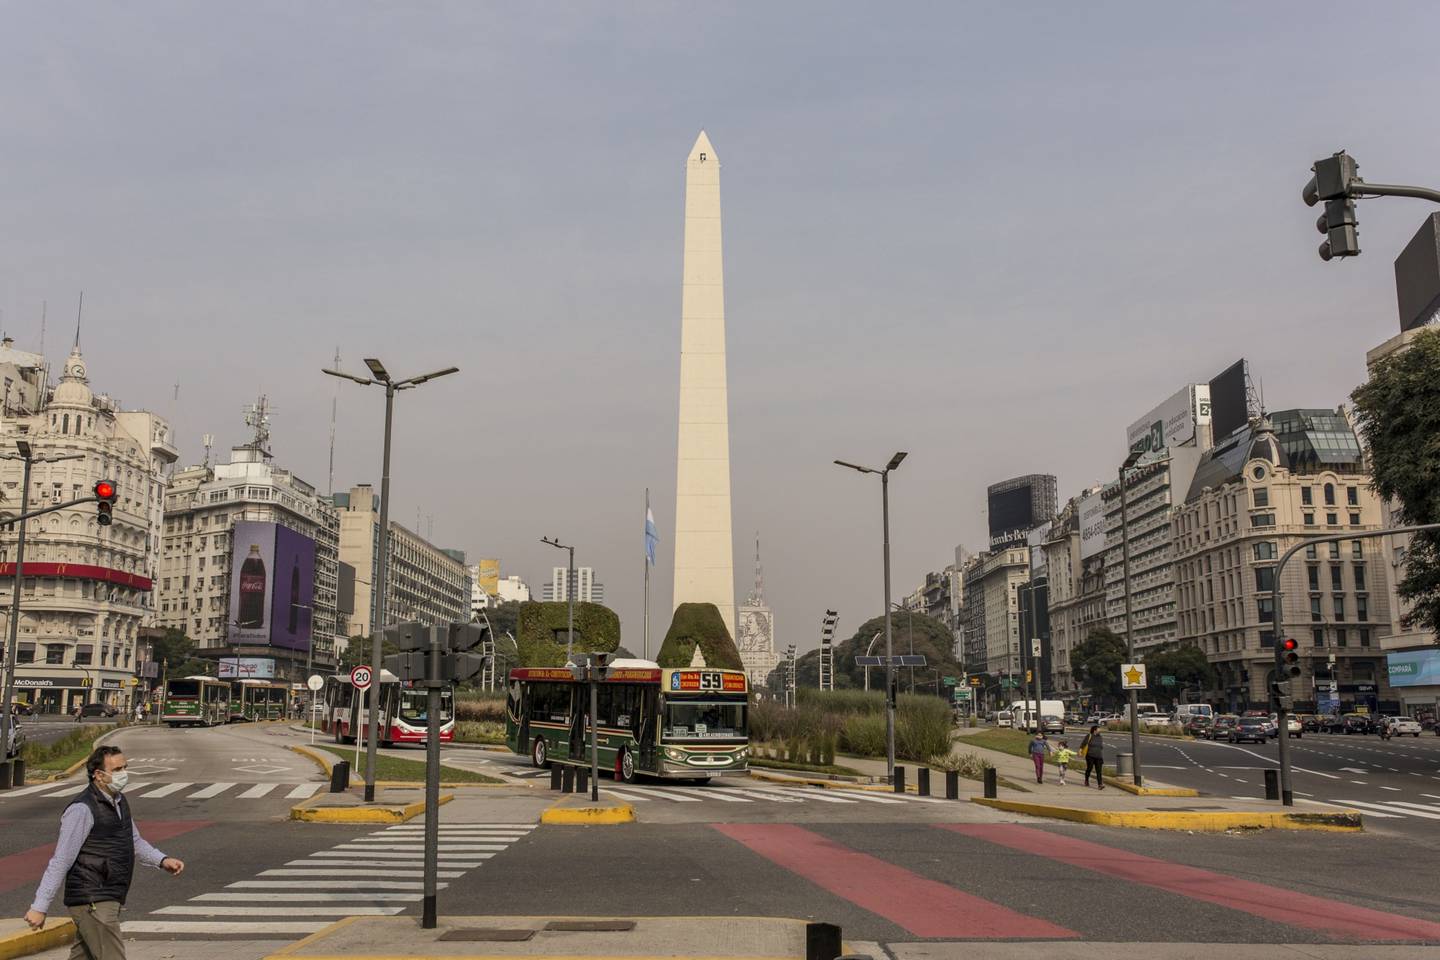 Buenos Aires ofrece alternativas para todos los gustos y presupuestos. Foto: Sarah Pabst/Bloomberg